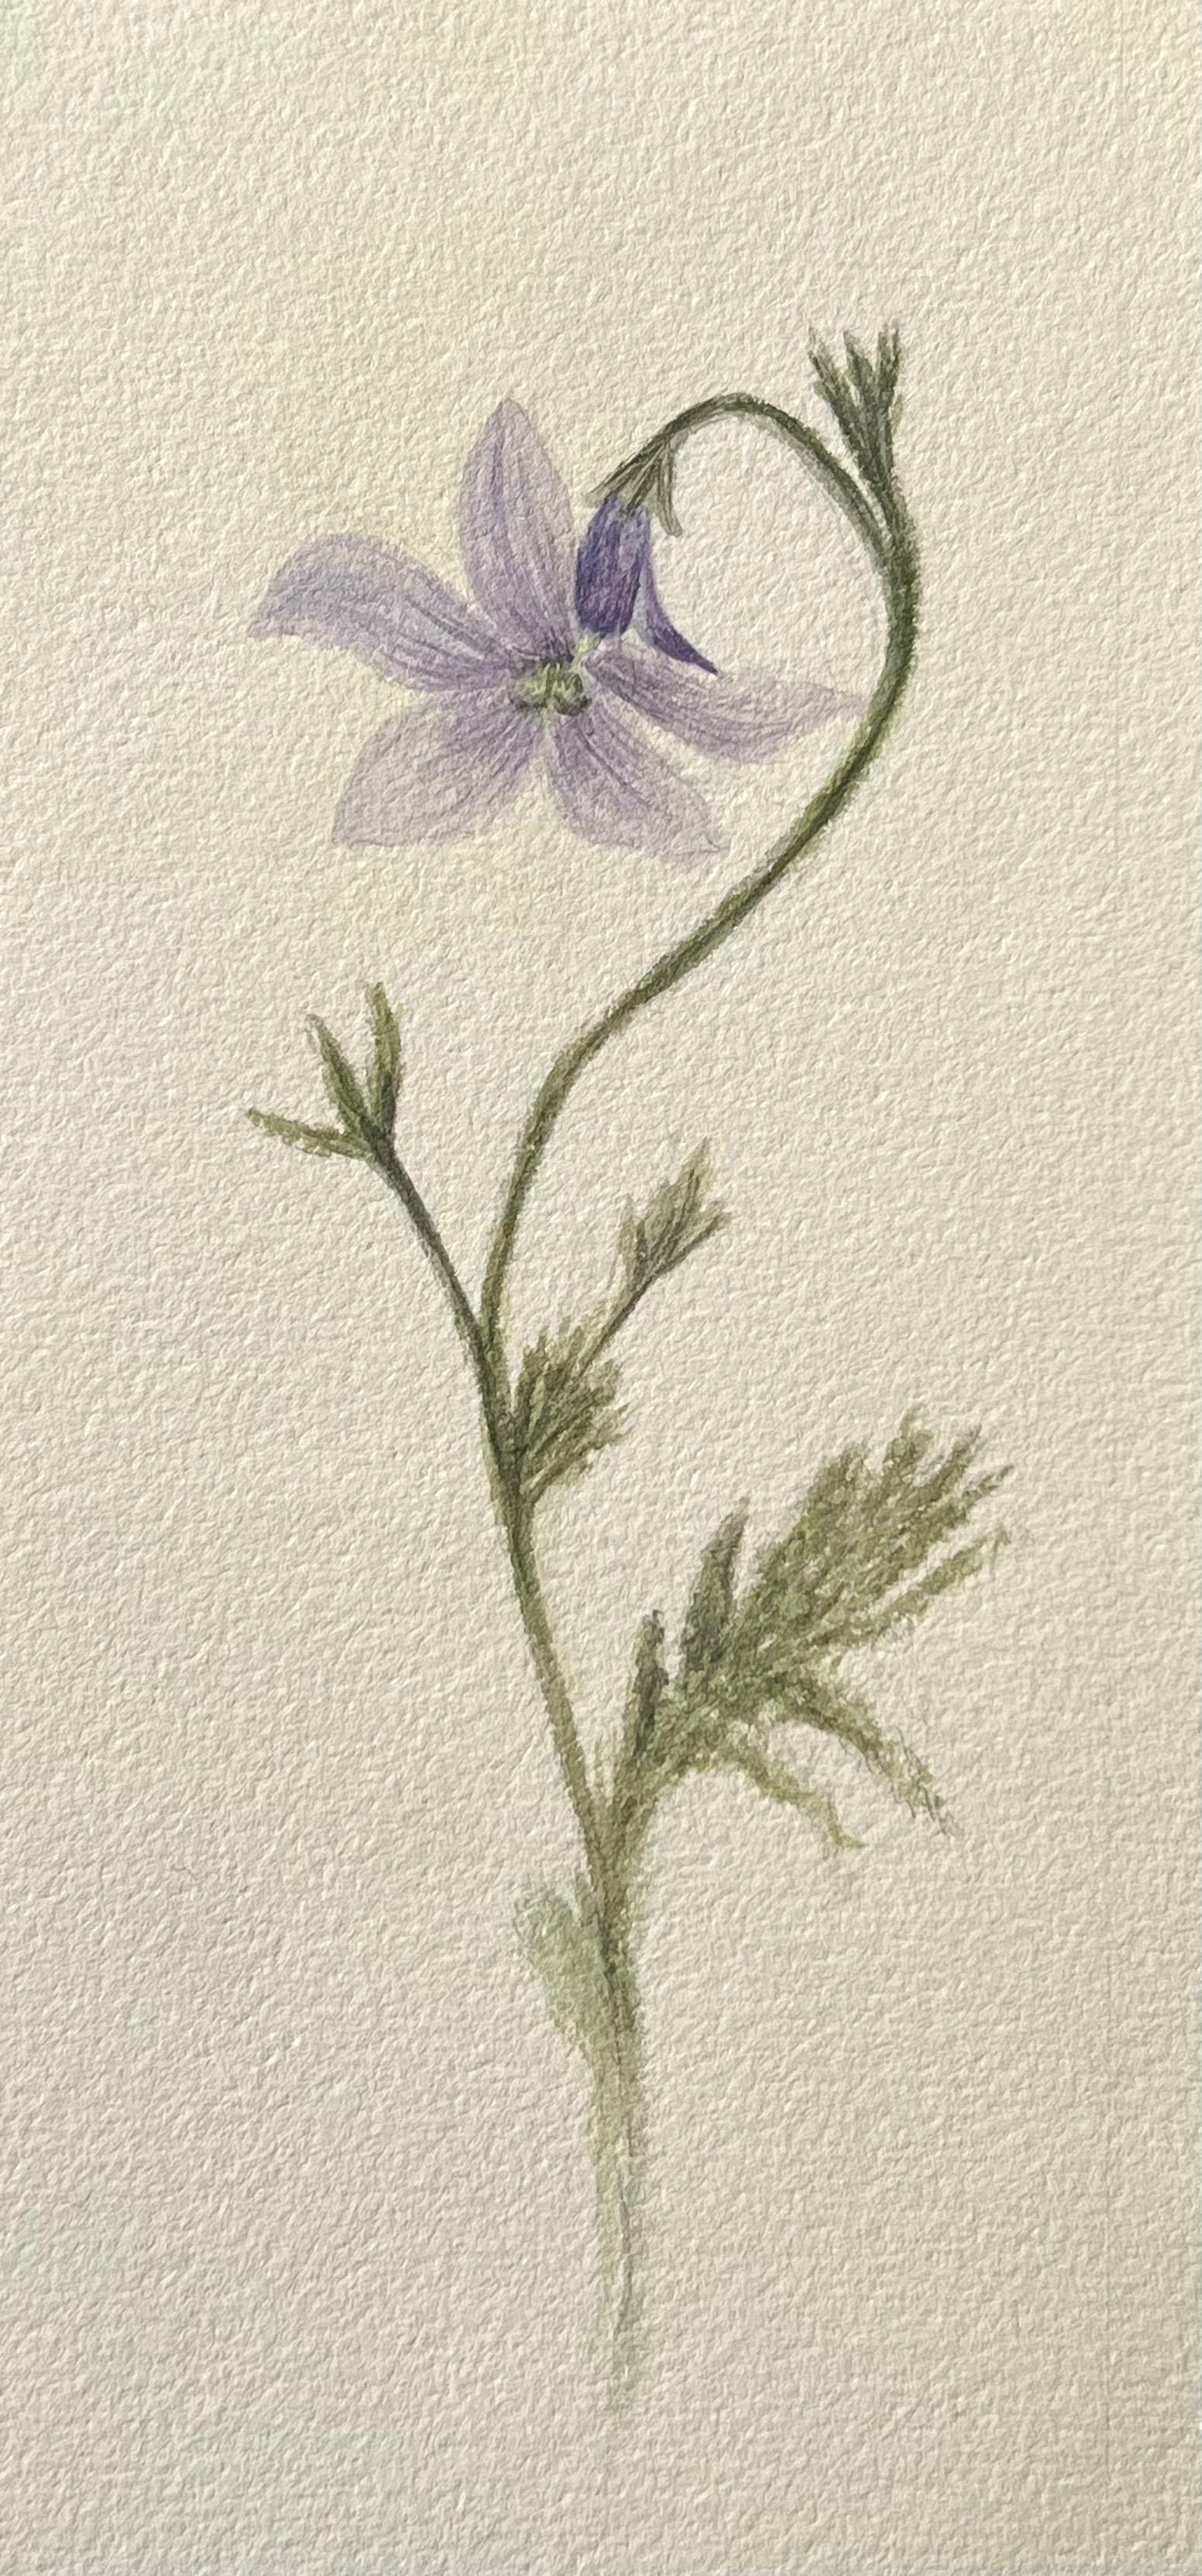 Antikes britisches botanisches Gemälde, lila Harebell-Pflanzgefäß, Vintage – Art von Caroline Worsley